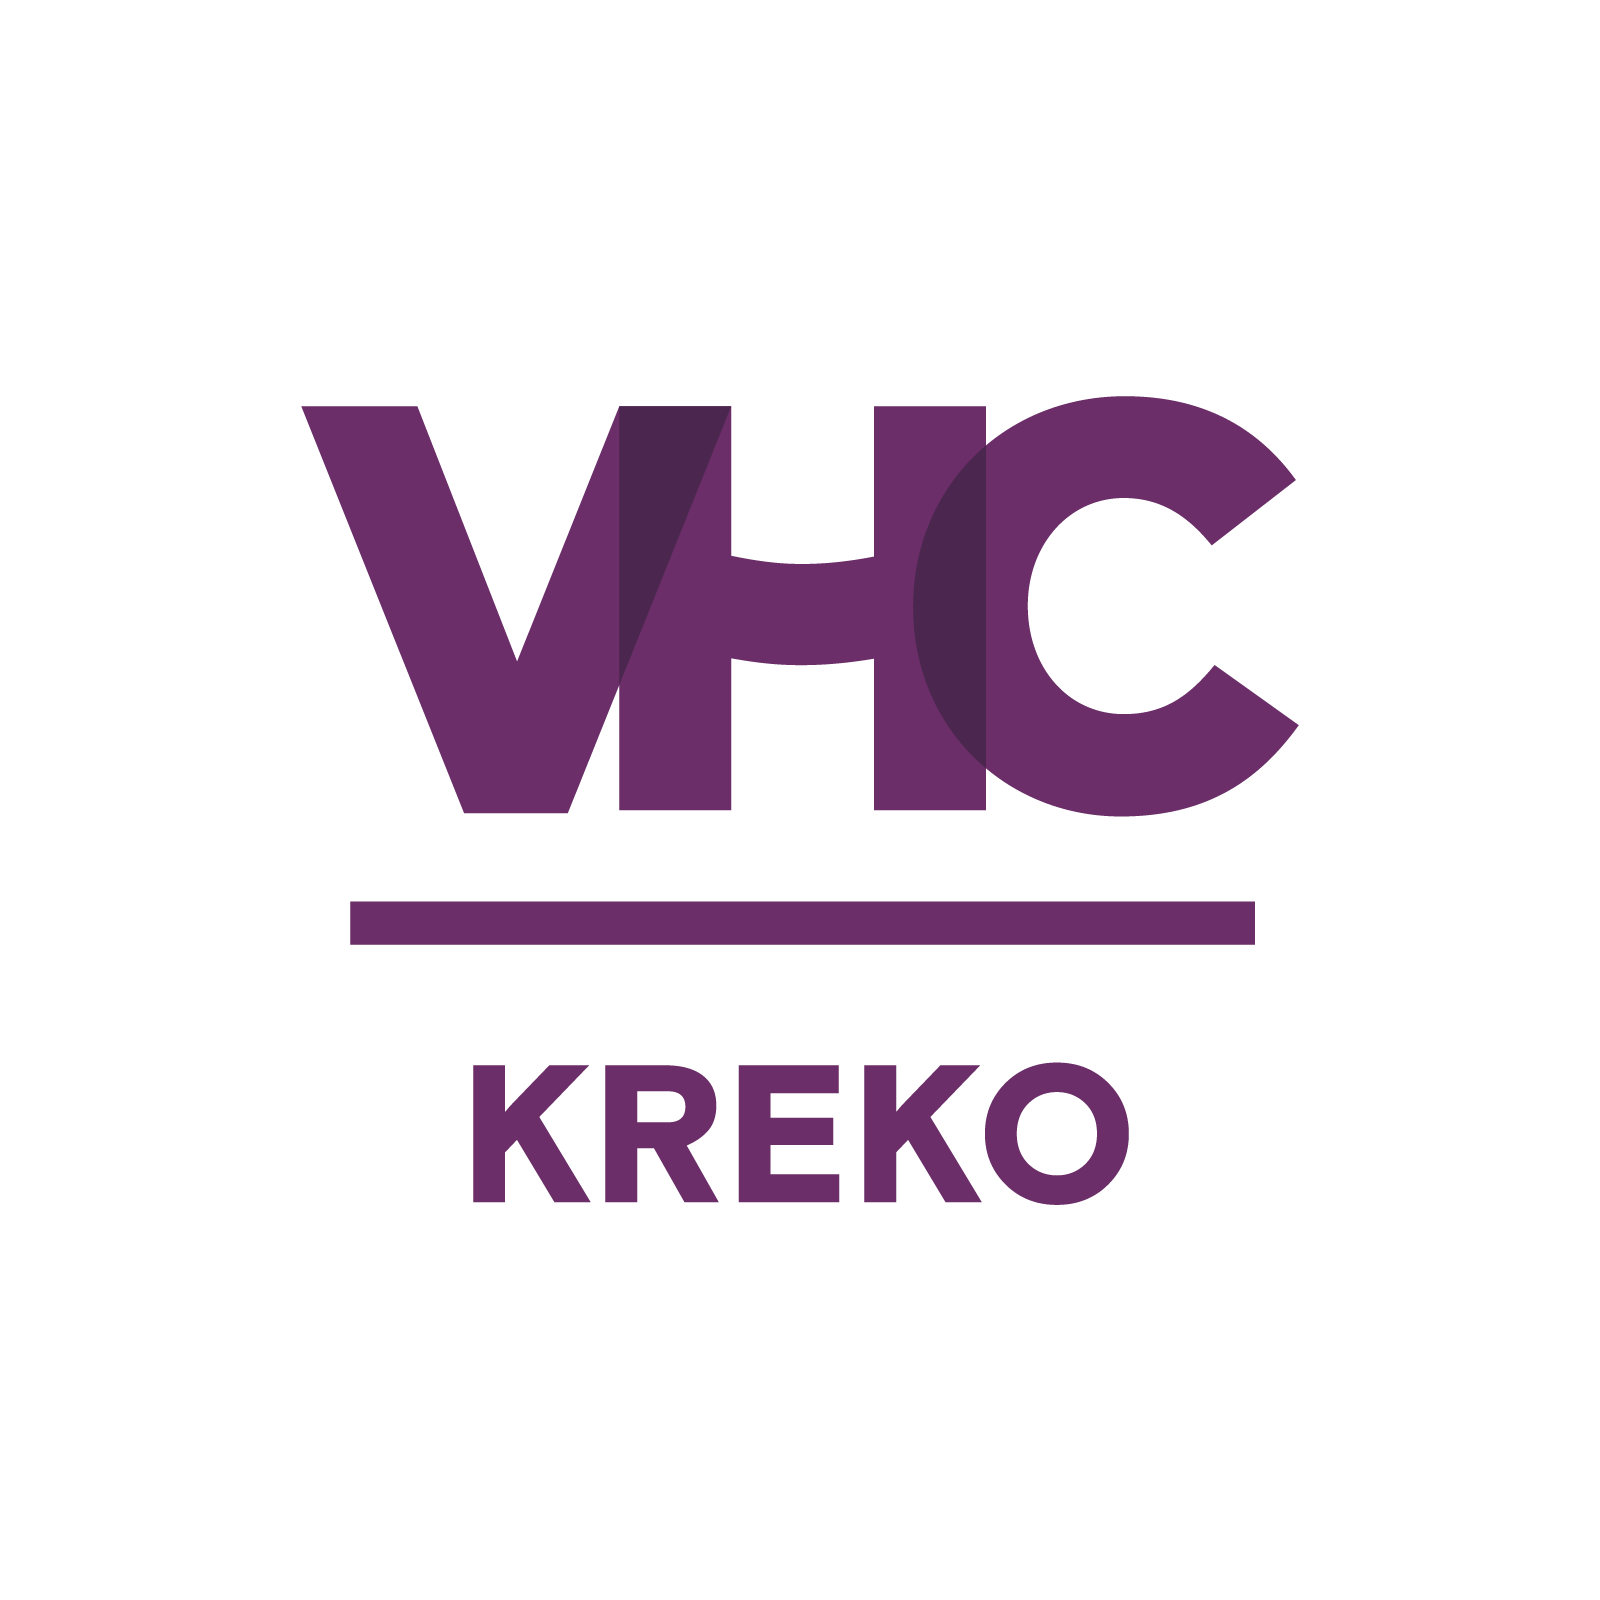 VHC Kreko Hellevoetsluis